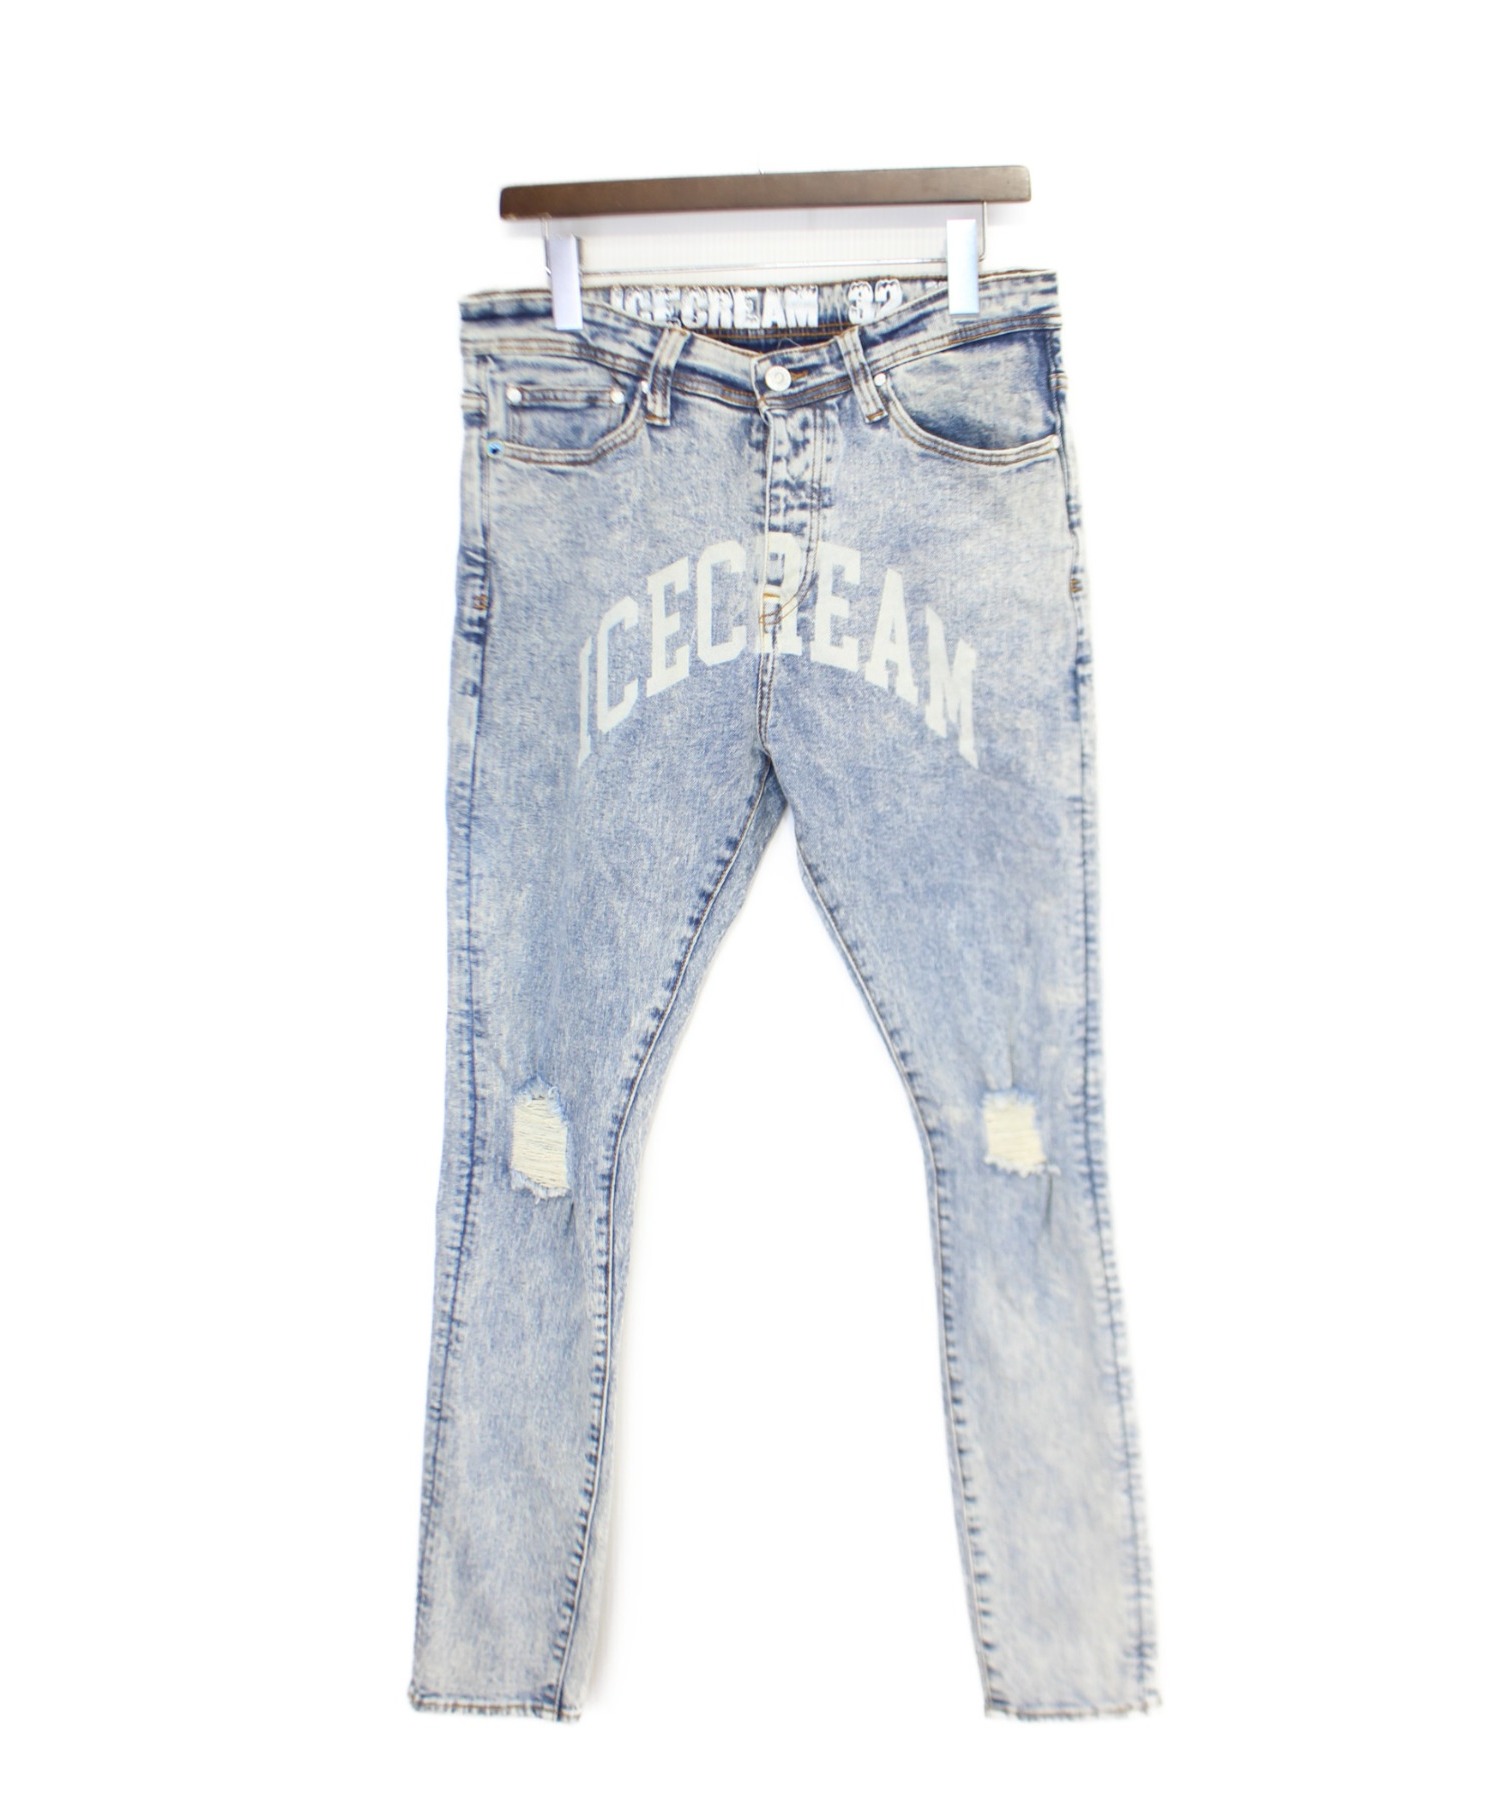 クーポン発行 美品 Ivy Jeans サイズ32 クリアランスバーゲン 期間限定開催 Www Globaldentalcentre Org